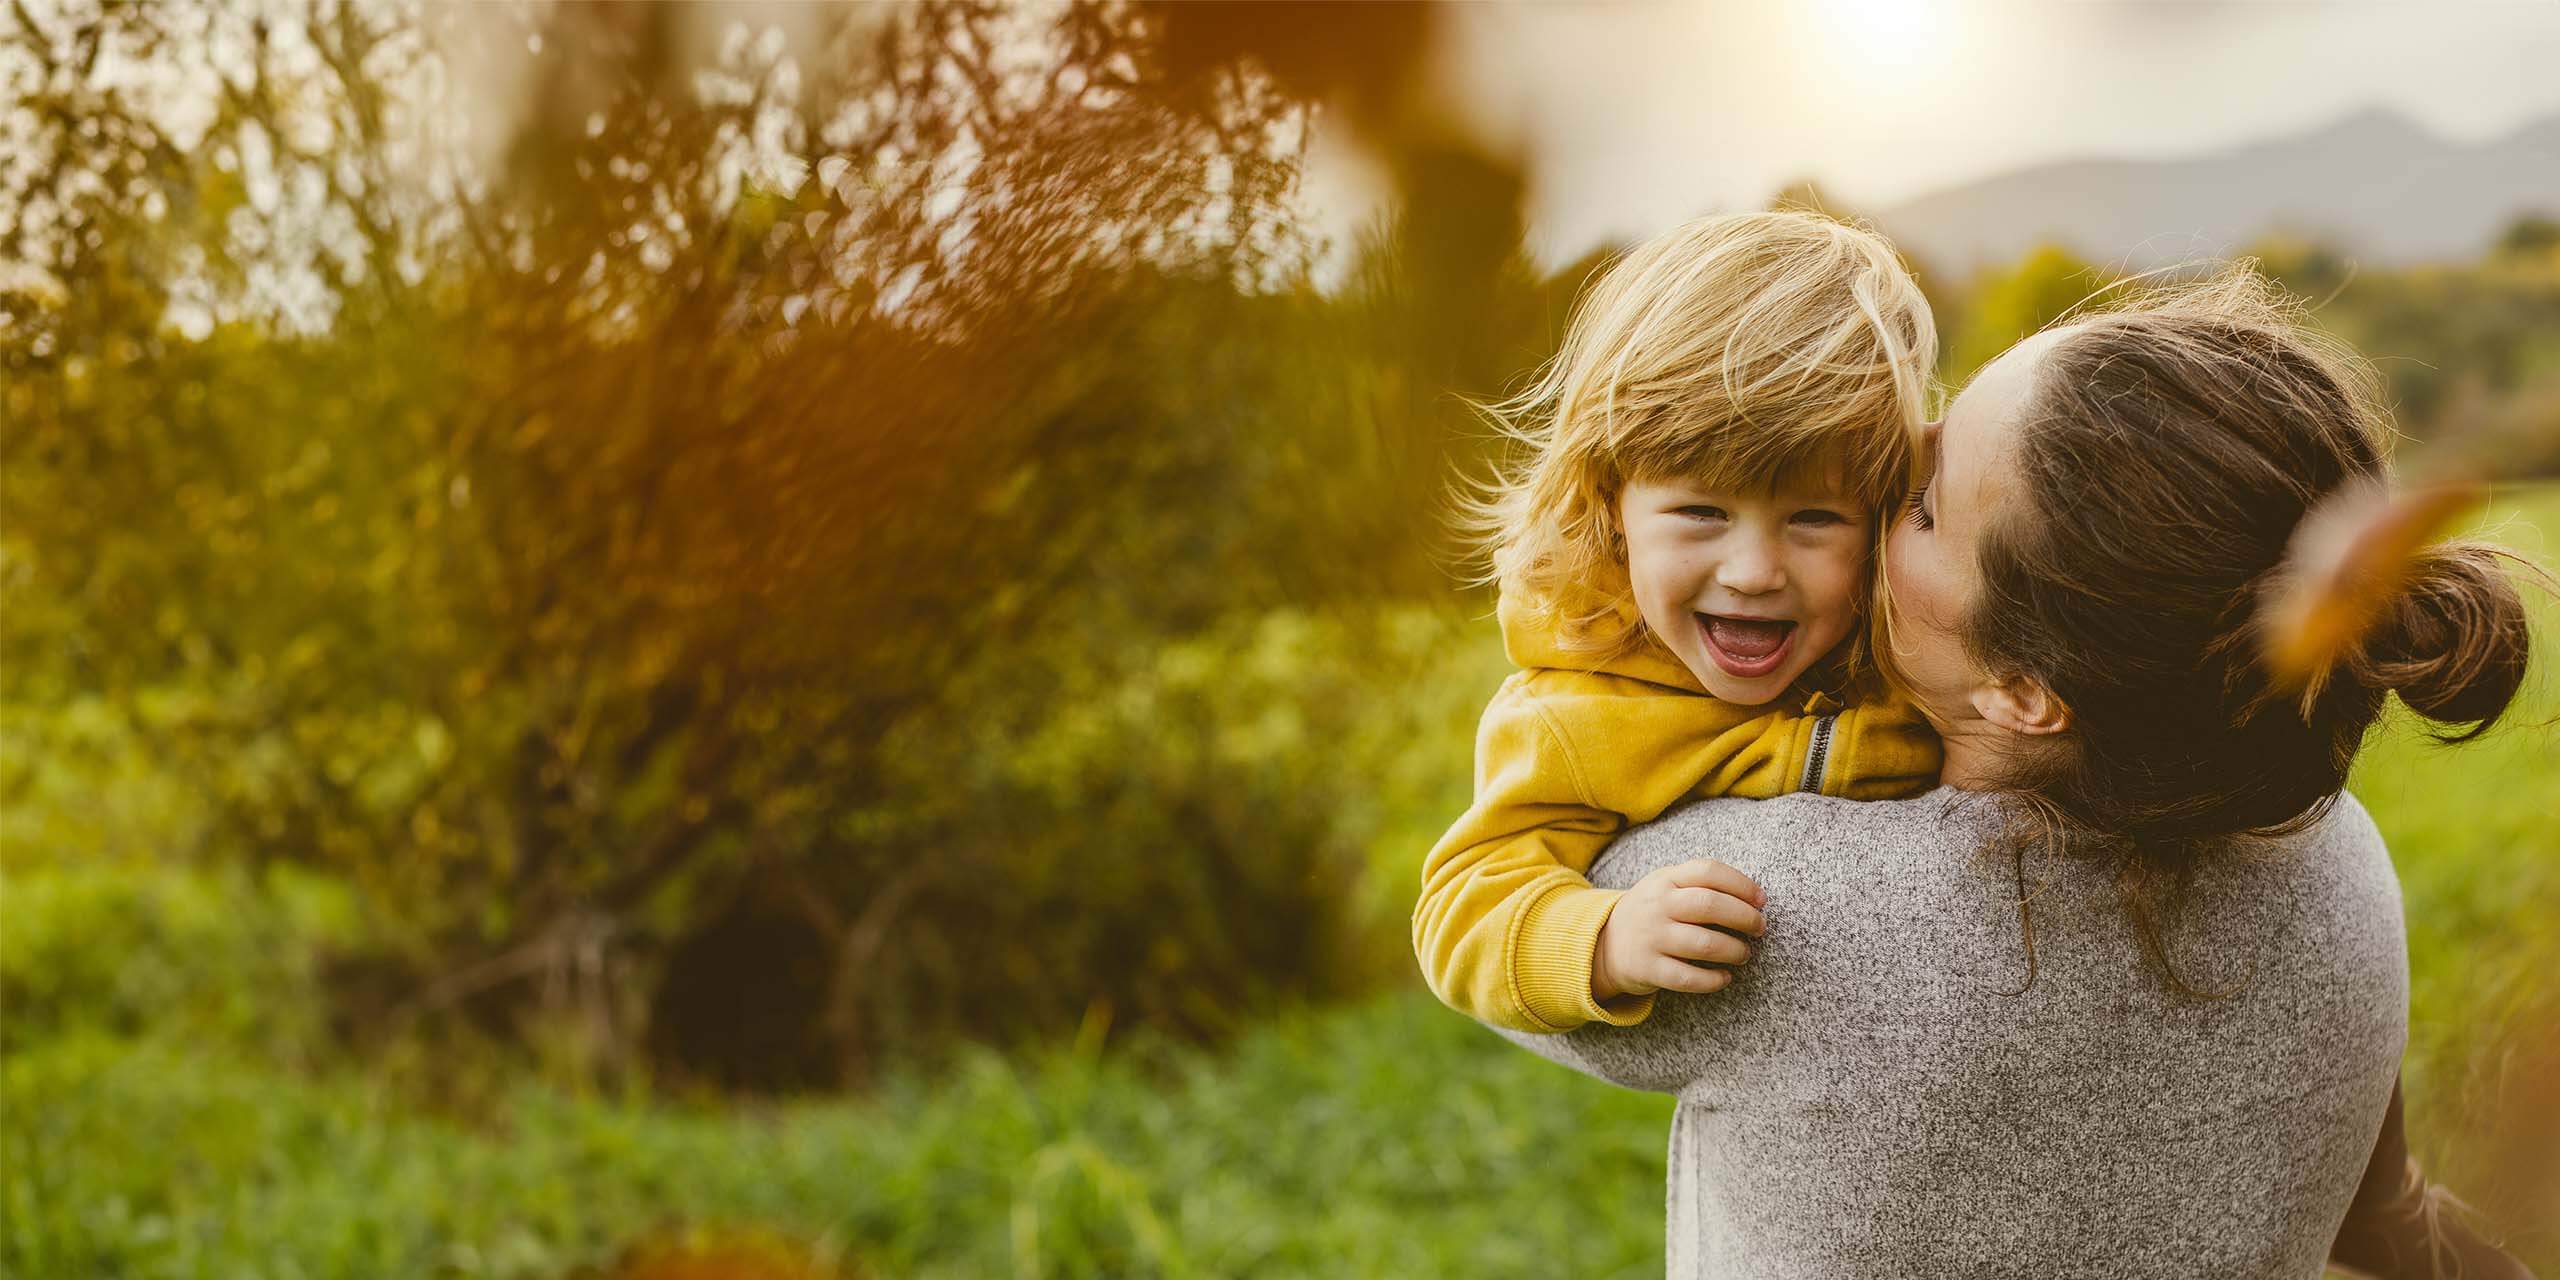 Ein fröhliches kleines Kind in einem gelben Hemd lacht, während es von seiner lächelnden Mutter im grauen Pullover gehalten und auf die Wange geküsst wird, draußen mit viel Grün und sanftem Sonnenlicht im Hintergrund.